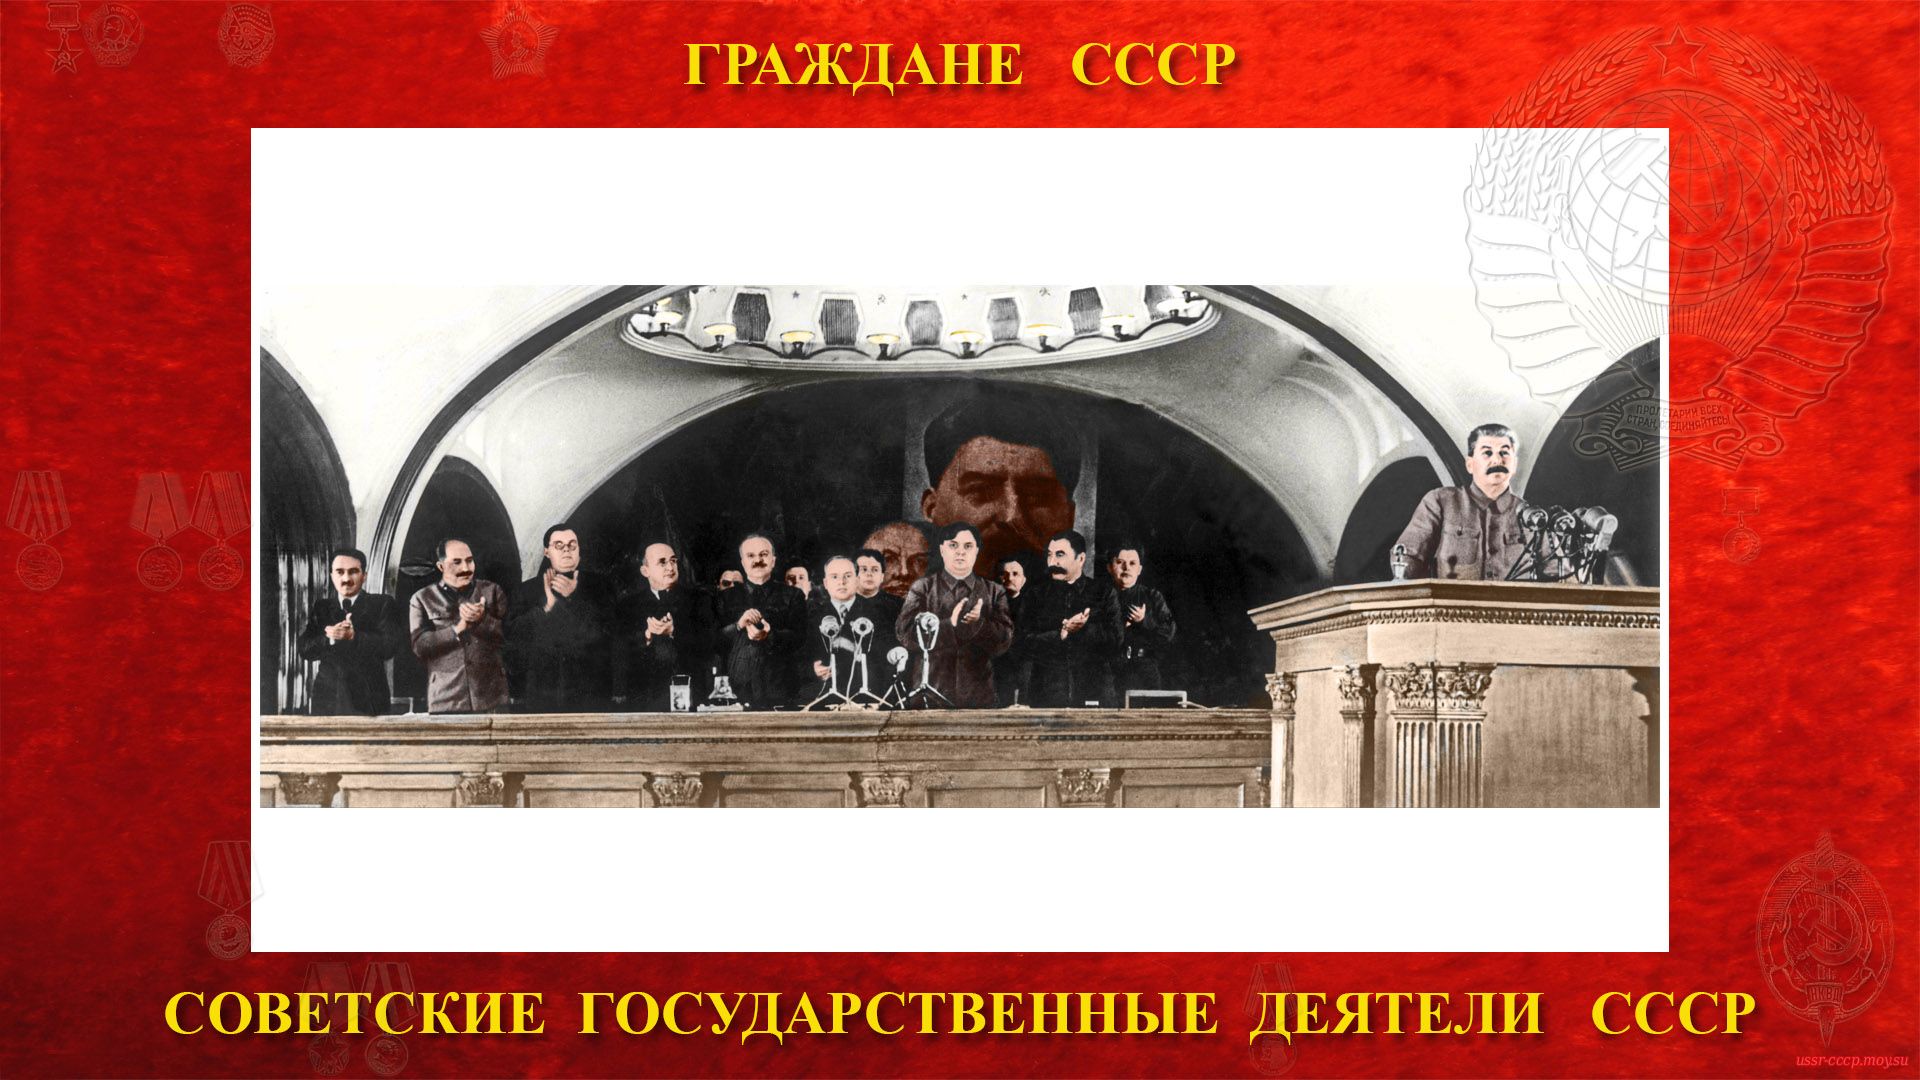 06 сентября 1941 года (слева на право) А.И. Микоян, Л.М. Каганович, А.С. Щербаков, Л.П. Берия, В.М. Молотов, Г.М. Маленков, С.М. Буденный и другие товарищи, речь произносит И.В. Сталин.